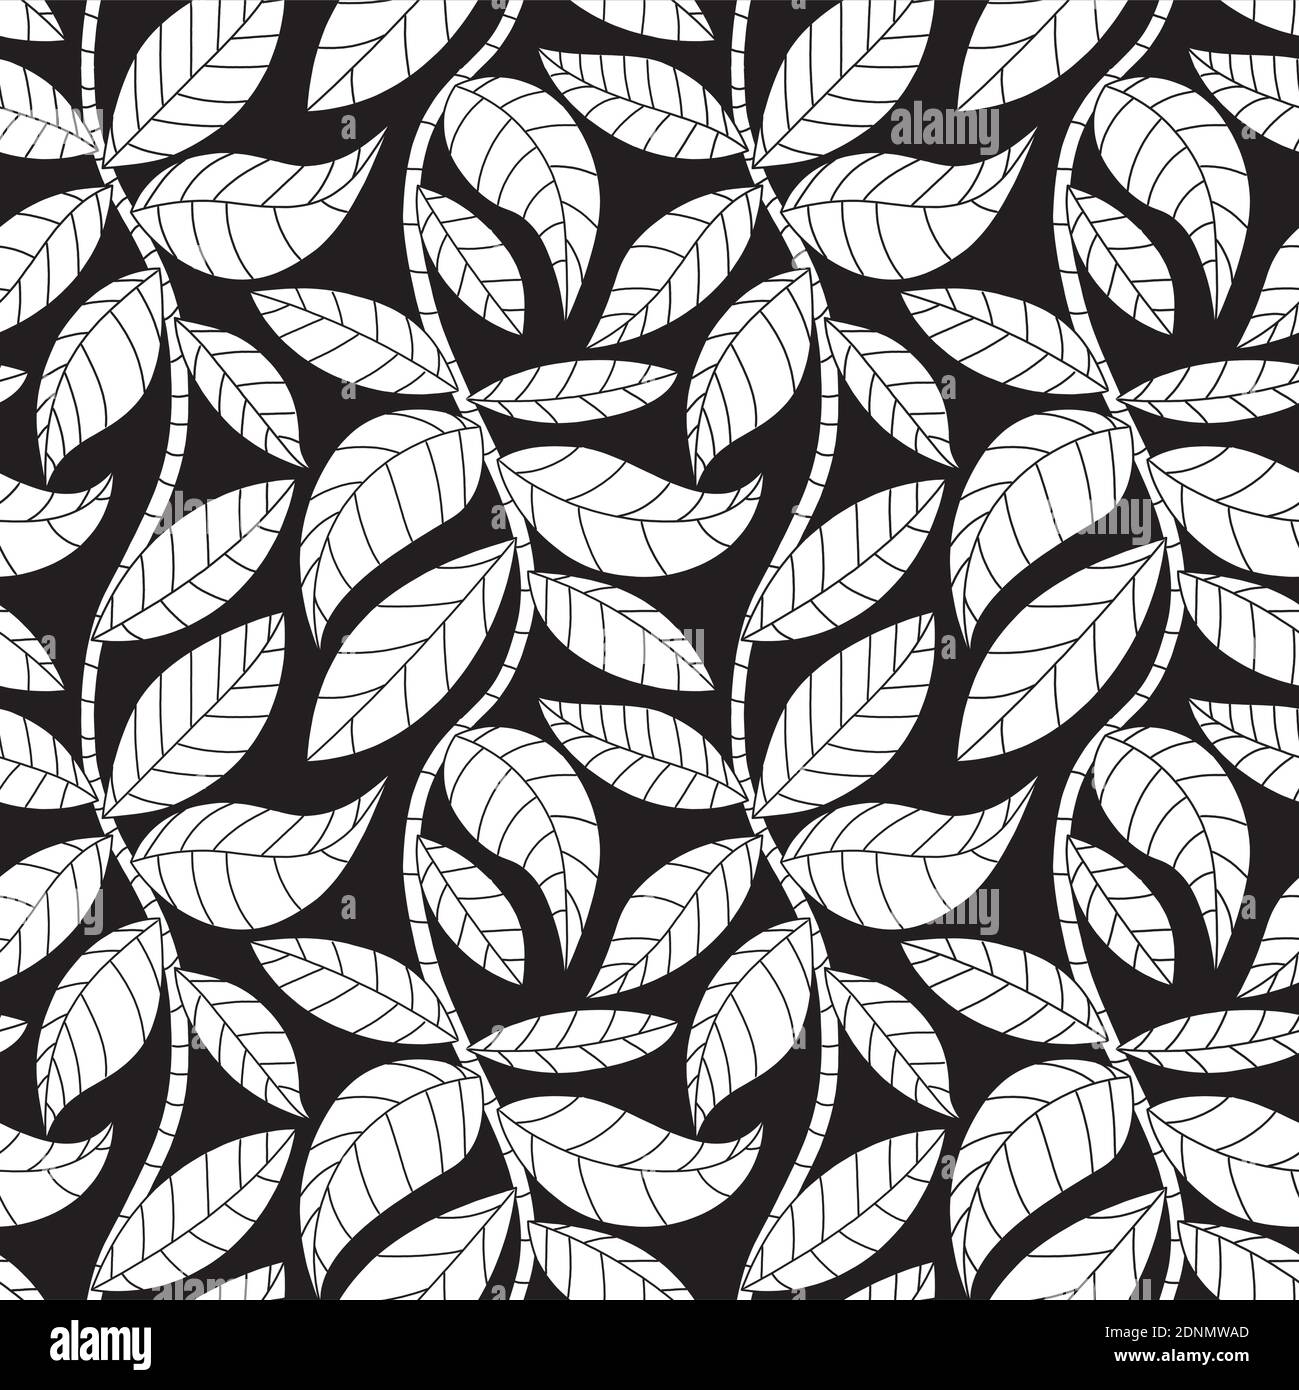 Nahtlose Vektor-Muster mit einfachen Blättern auf Ästen in schwarz und weiß. Natur Tapete Hintergrund. Stock Vektor